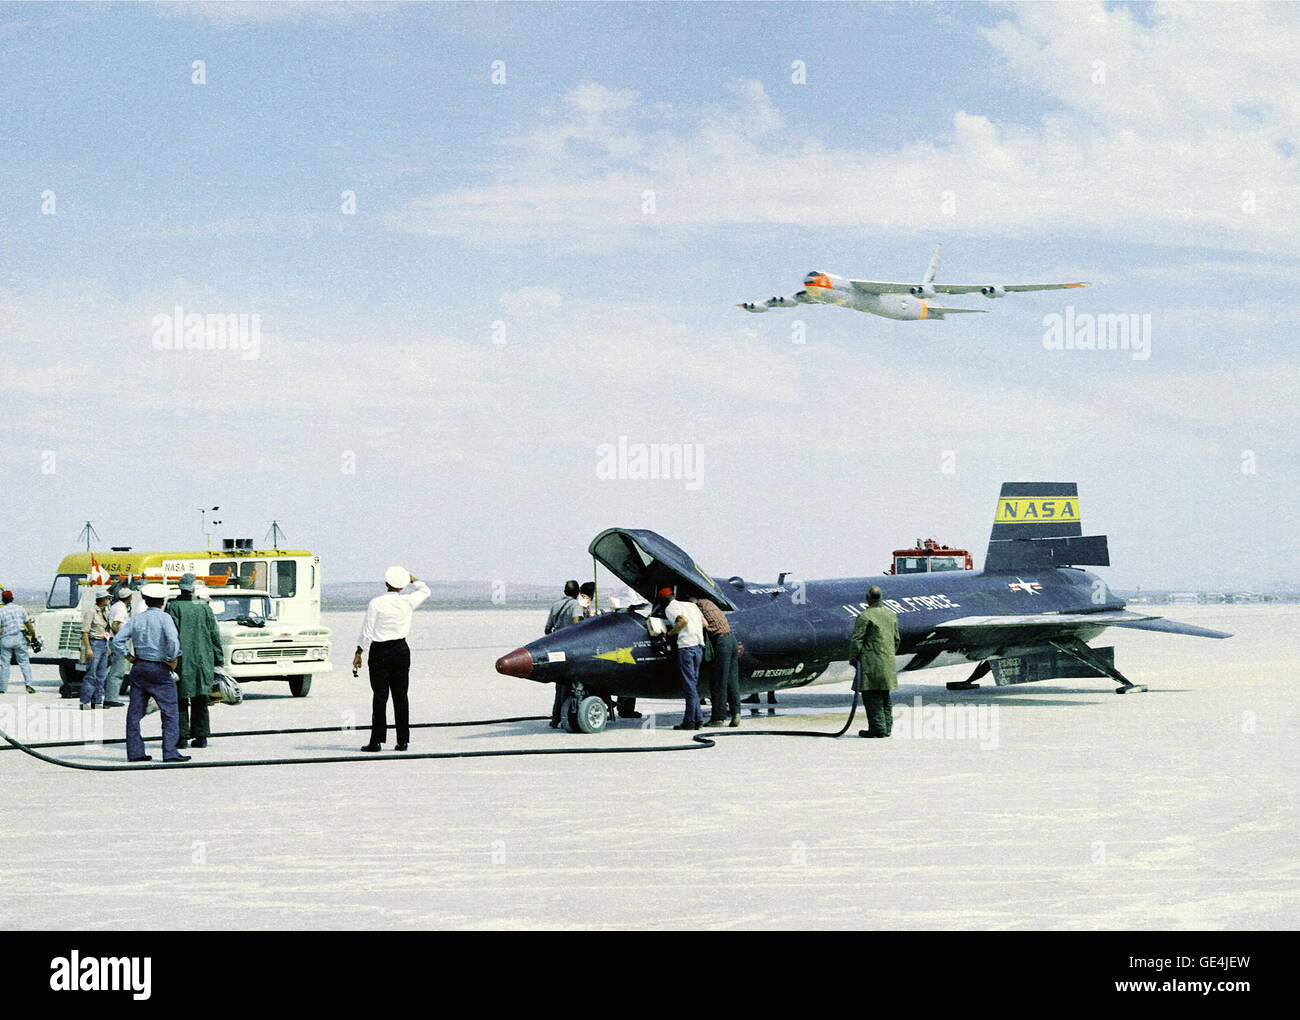 (1 settembre 1961) come membri di equipaggio fissare l'X-15 razzo-powered aeromobile dopo un volo di ricerca, il B-52 mothership utilizzato per il lancio di questo unico aeromobile fa un basso fly-by overhead. L'X-15s in un totale di 199 voli per un periodo di quasi dieci anni dal 1959 al 1968, e impostare unofficial mondo velocità e altitudine record di 4,520 mph (Mach 6.7) e 354,200 piedi. Le informazioni acquisite dal successo di X-15 programma ha contribuito allo sviluppo del mercurio, Gemini e Apollo pilotato i programmi di volo spaziale, e anche programma Space Shuttle. Immagine # : CE-61-0034 Foto Stock